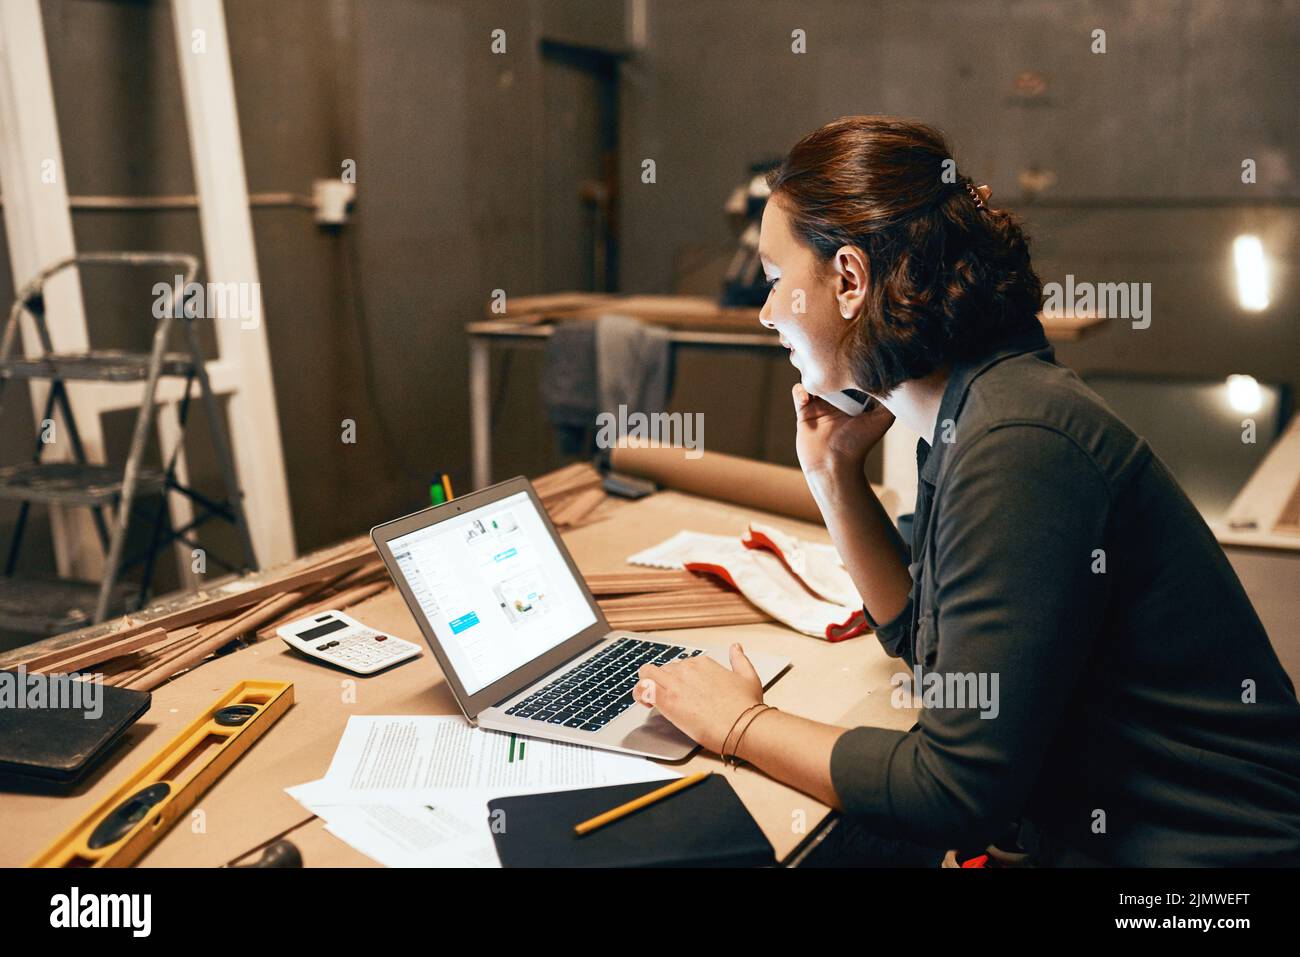 Tengo algunas cosas entre las que elegir. Una joven y atractiva carpintera trabajando en su portátil mientras habla por su teléfono móvil dentro de un taller. Foto de stock